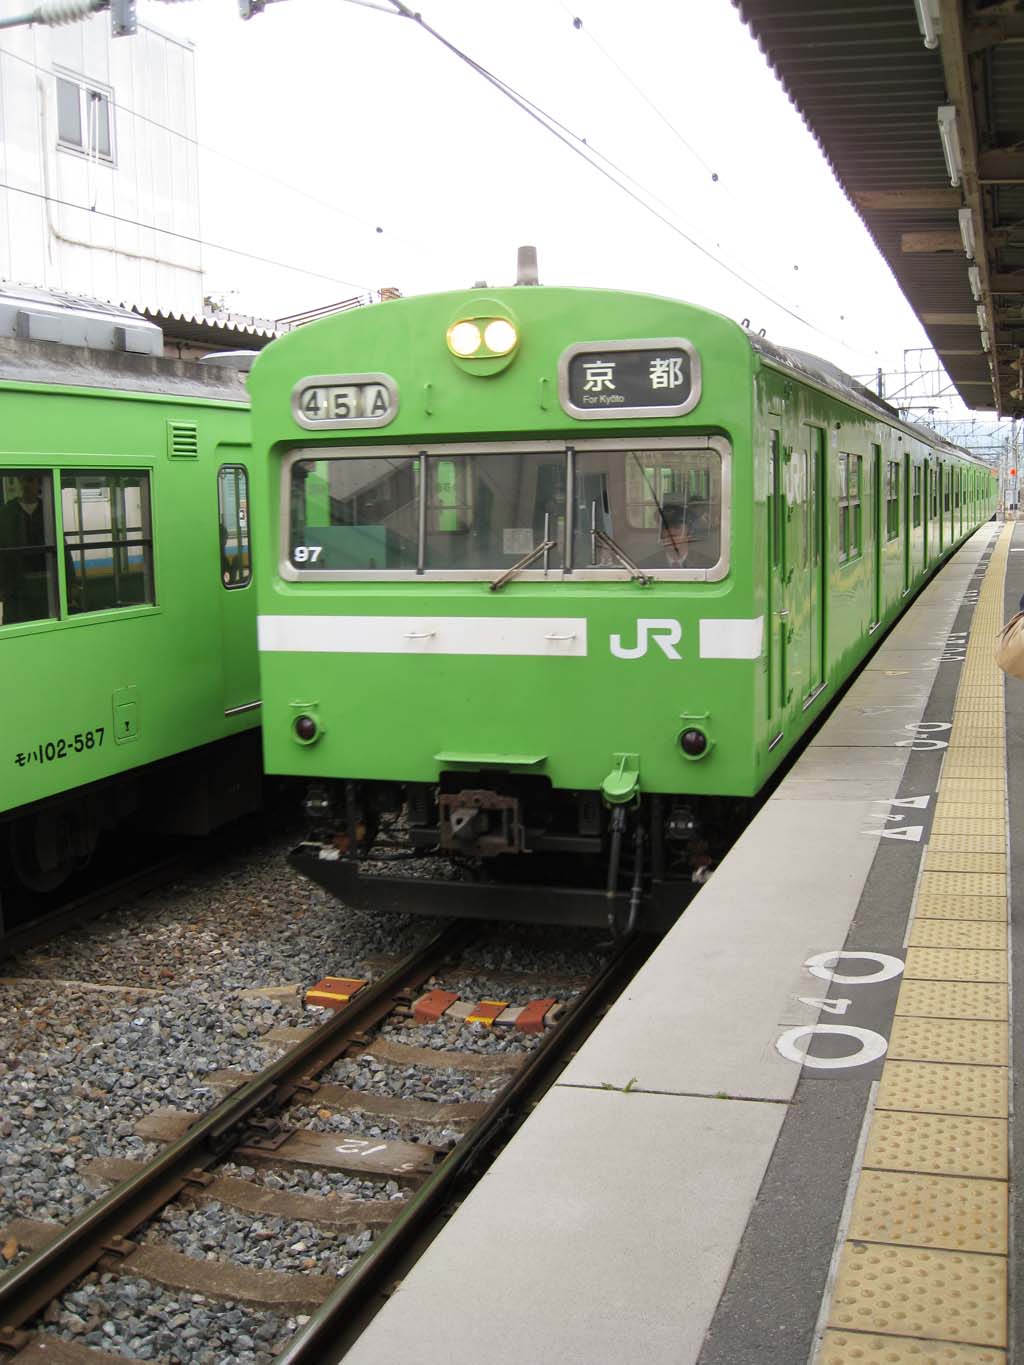 Foto, materiell, befreit, Landschaft, Bild, hat Foto auf Lager,JR Nara-Linie, Plattform, Zug, Grn, Eisenbahn